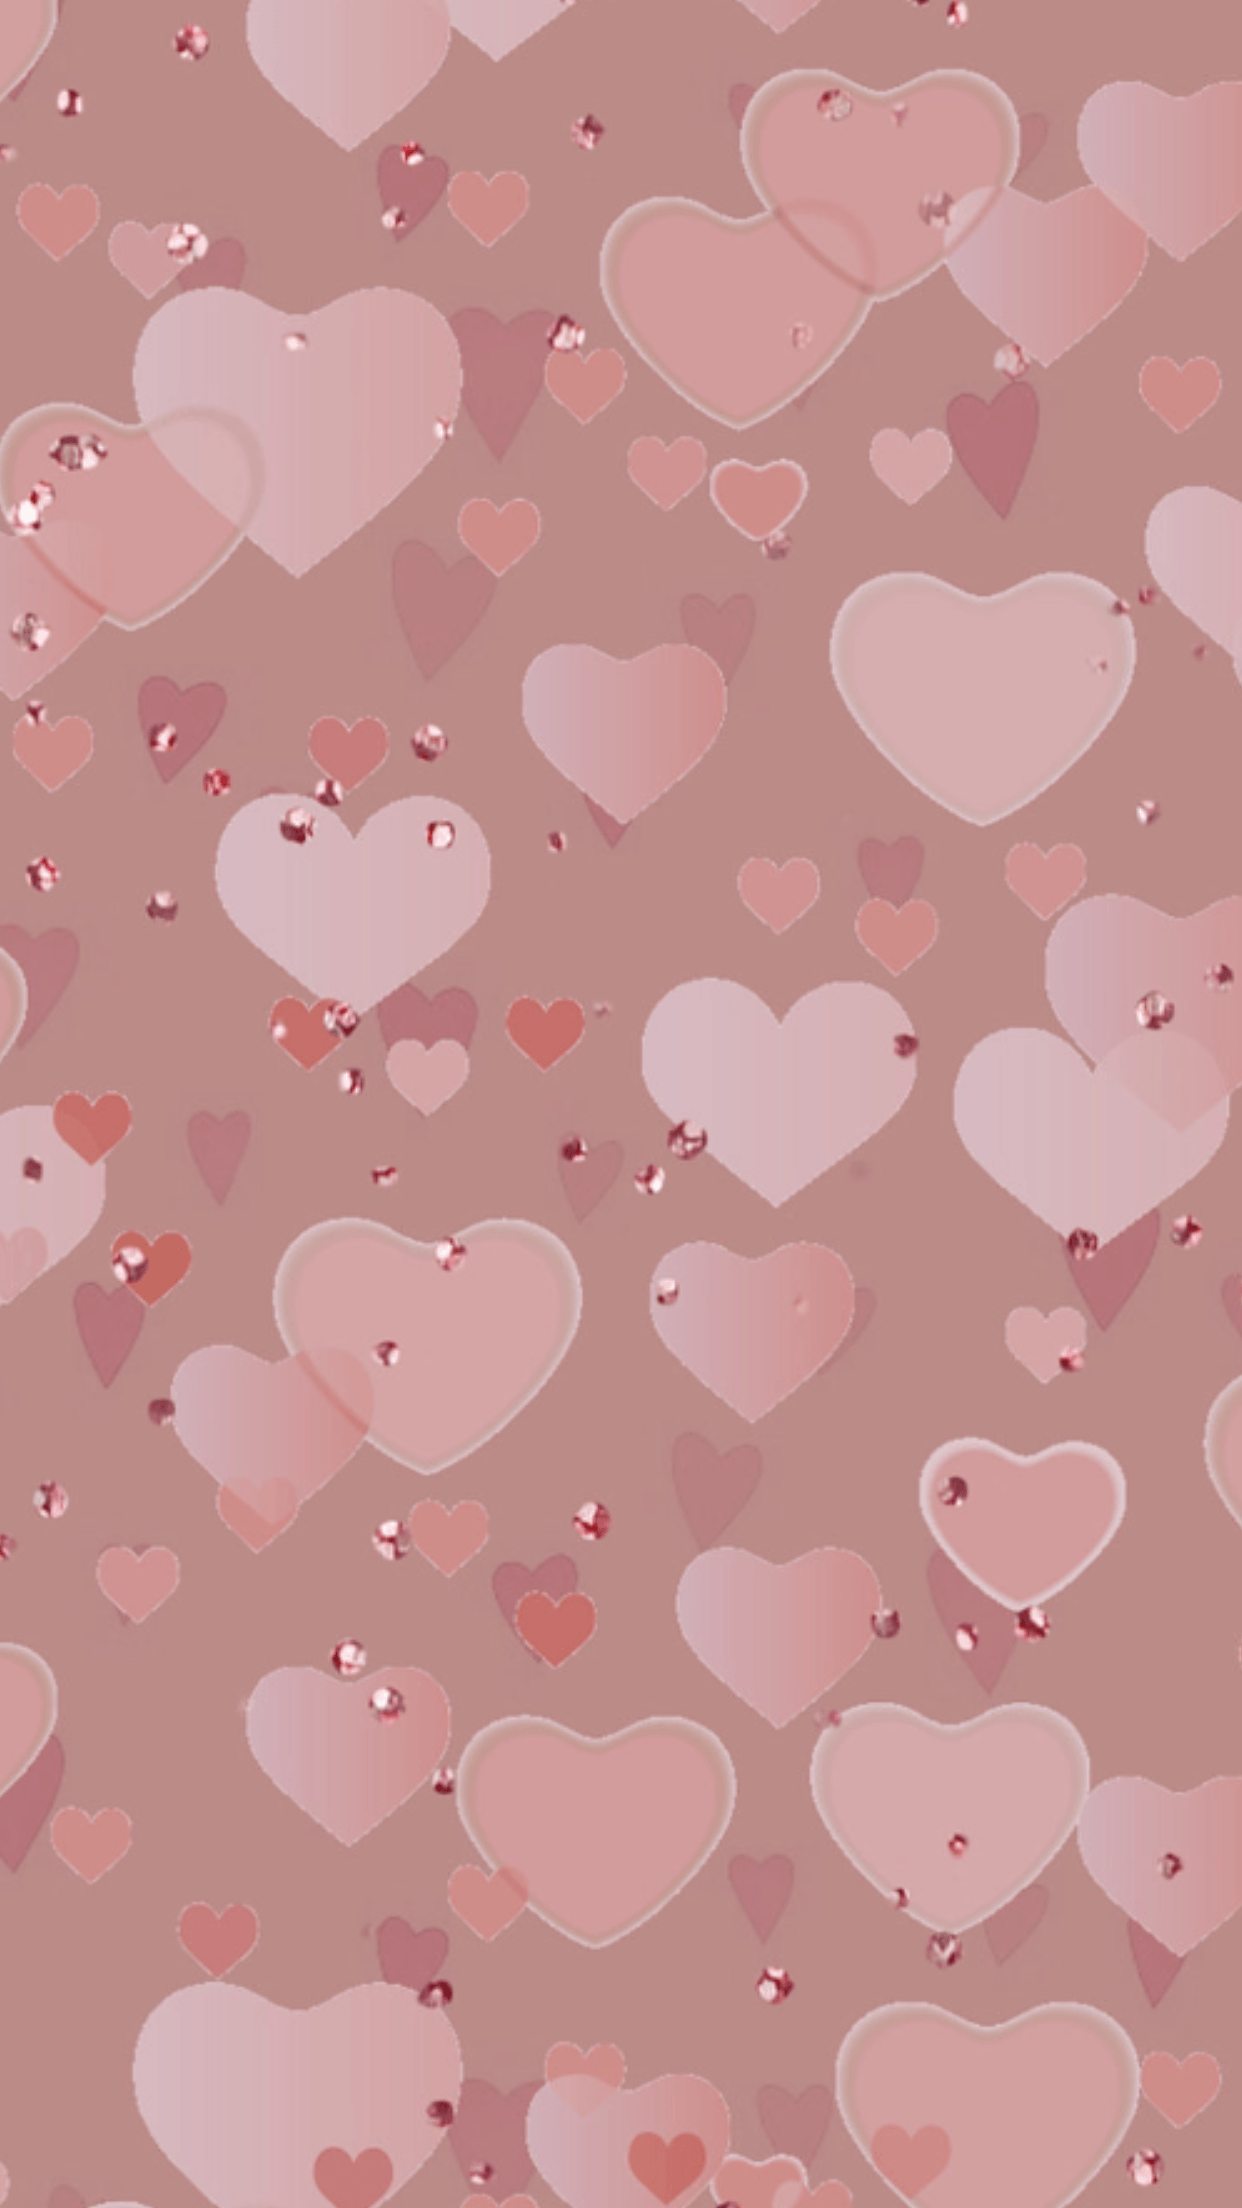 heart backgrounds on Pinterest